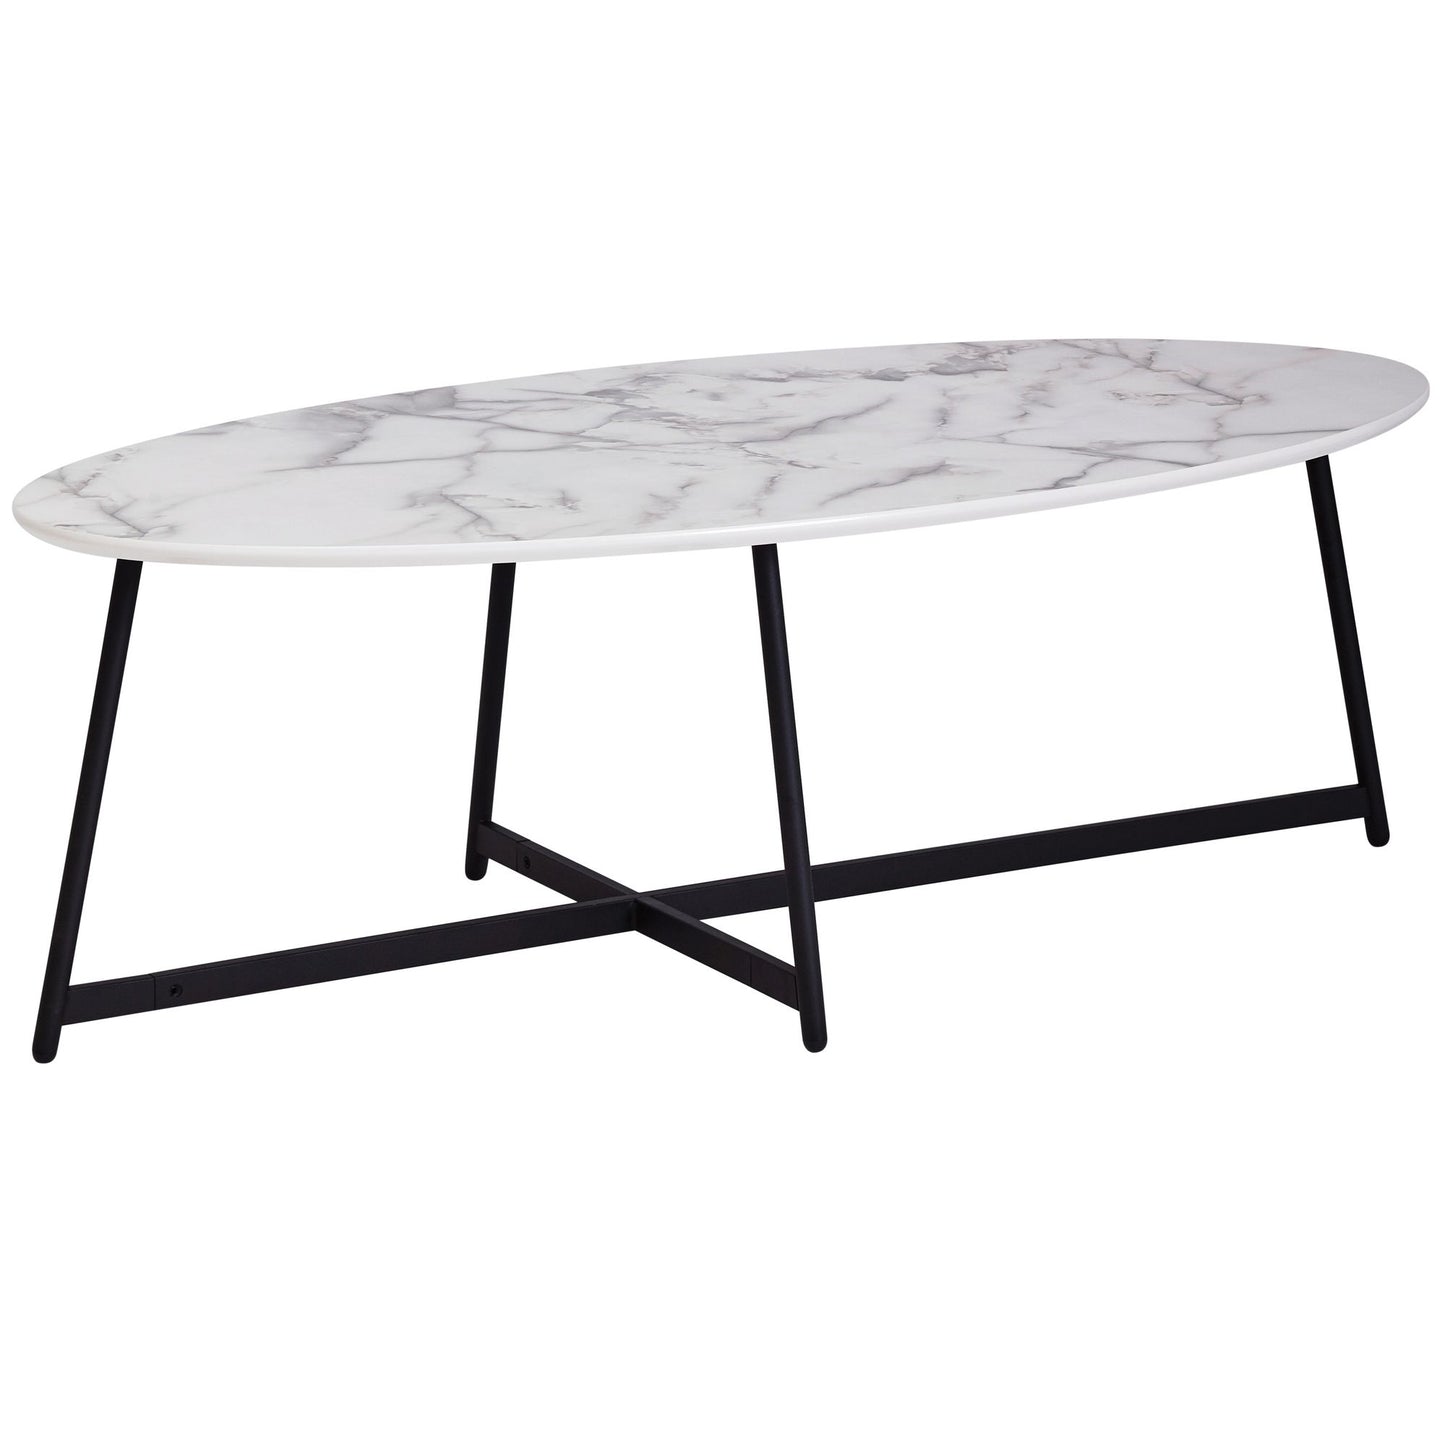 Design salontafel ovaal 120x60 cm met wit met zwarte poten